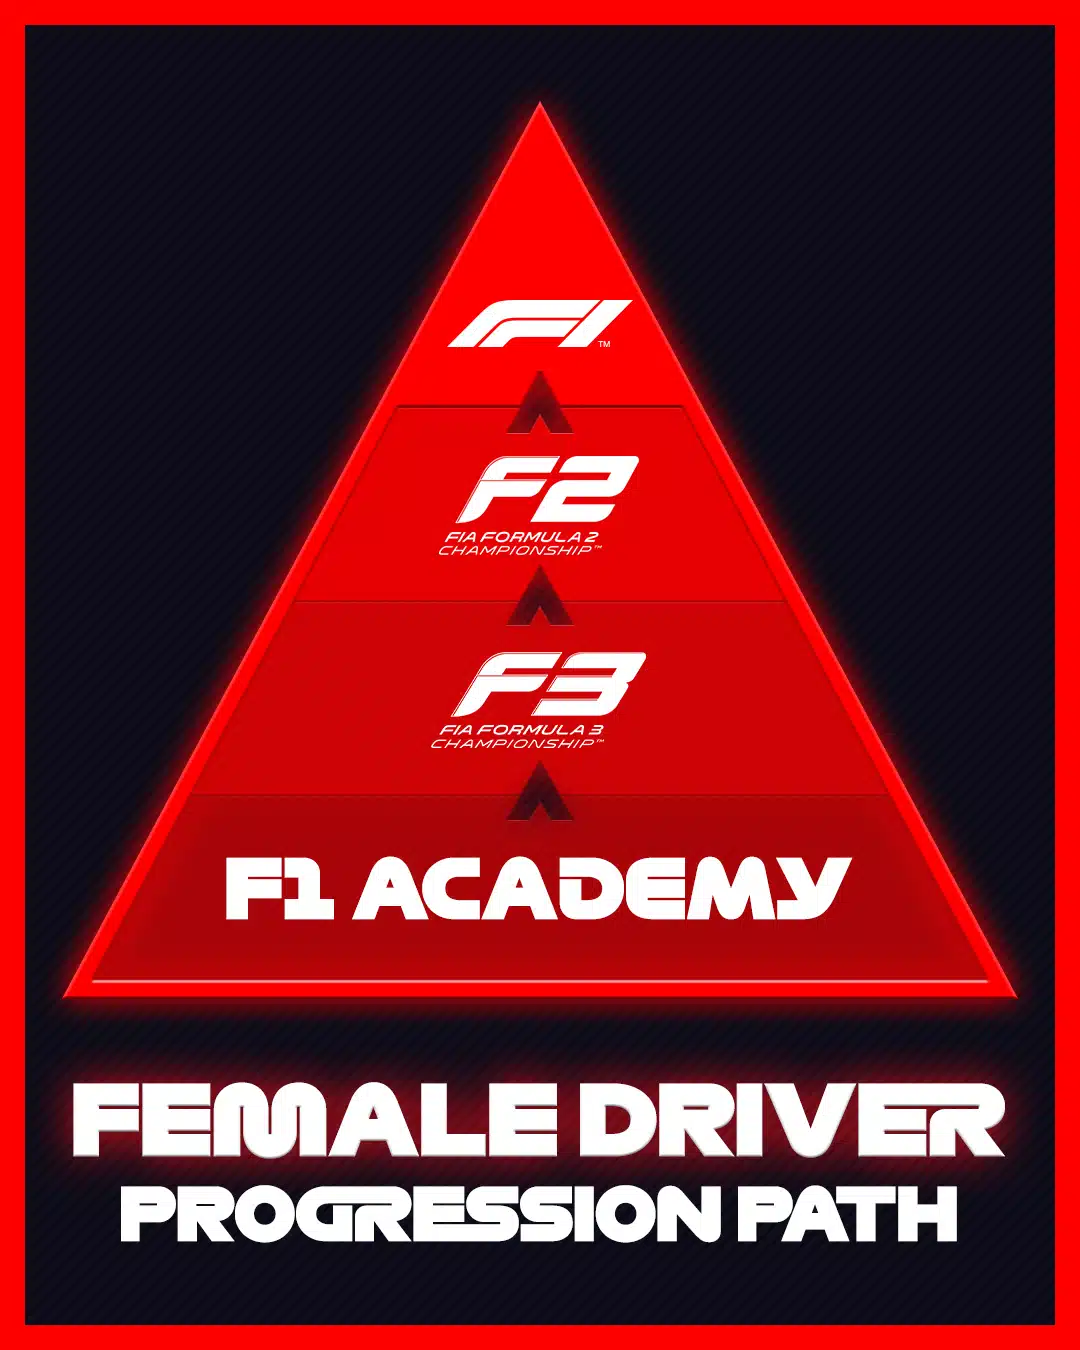 Pyramide de progression de la F1 Academie